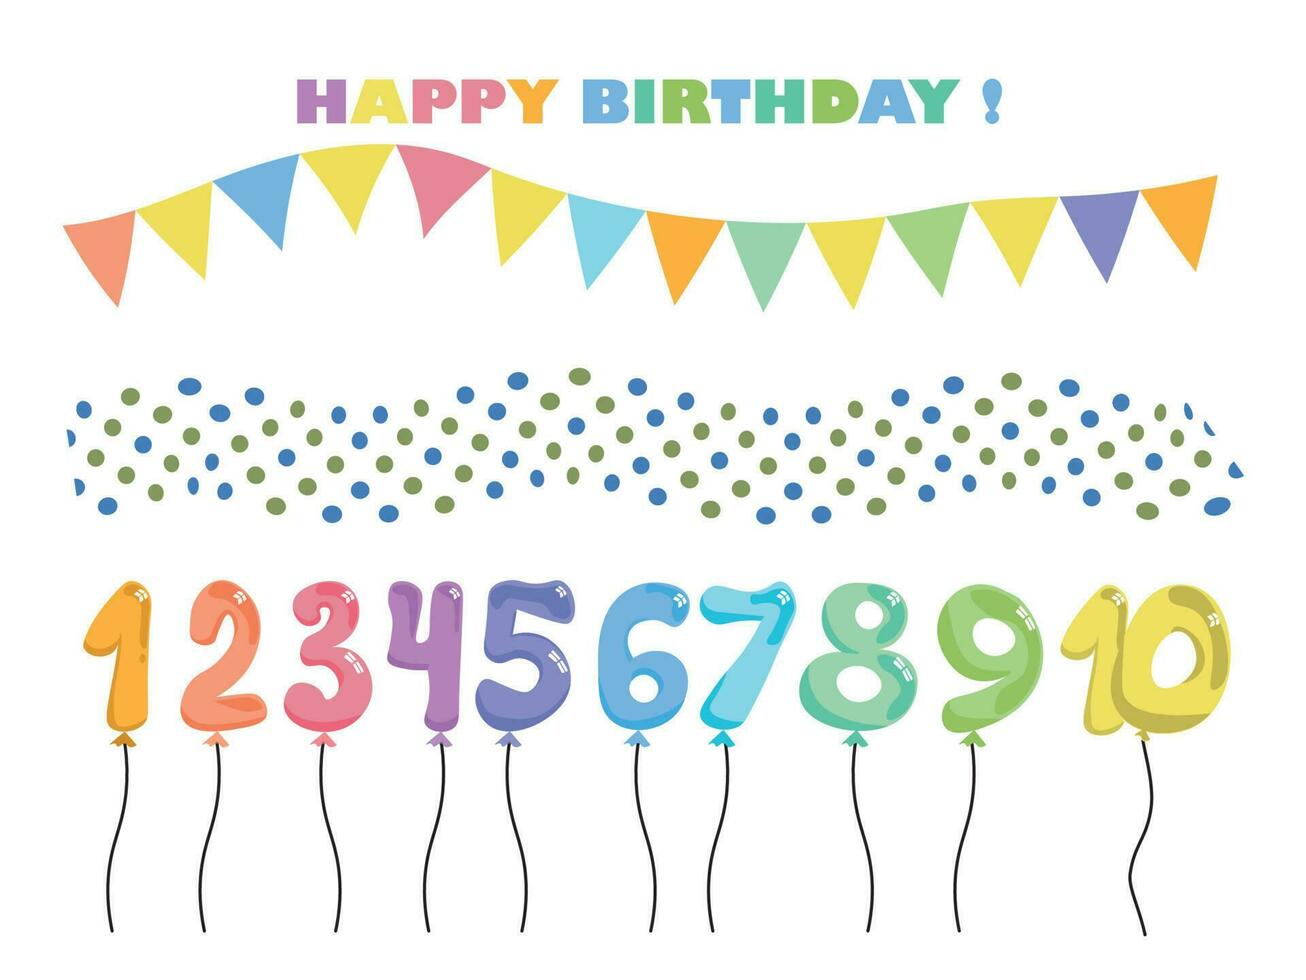 conjunto de globos y banderas, decoración para las fiestas y globos de colores de cumpleaños del uno al diez. Ilustración de vector de bola llena de aire de lámina numérica diferente aislada sobre fondo blanco.